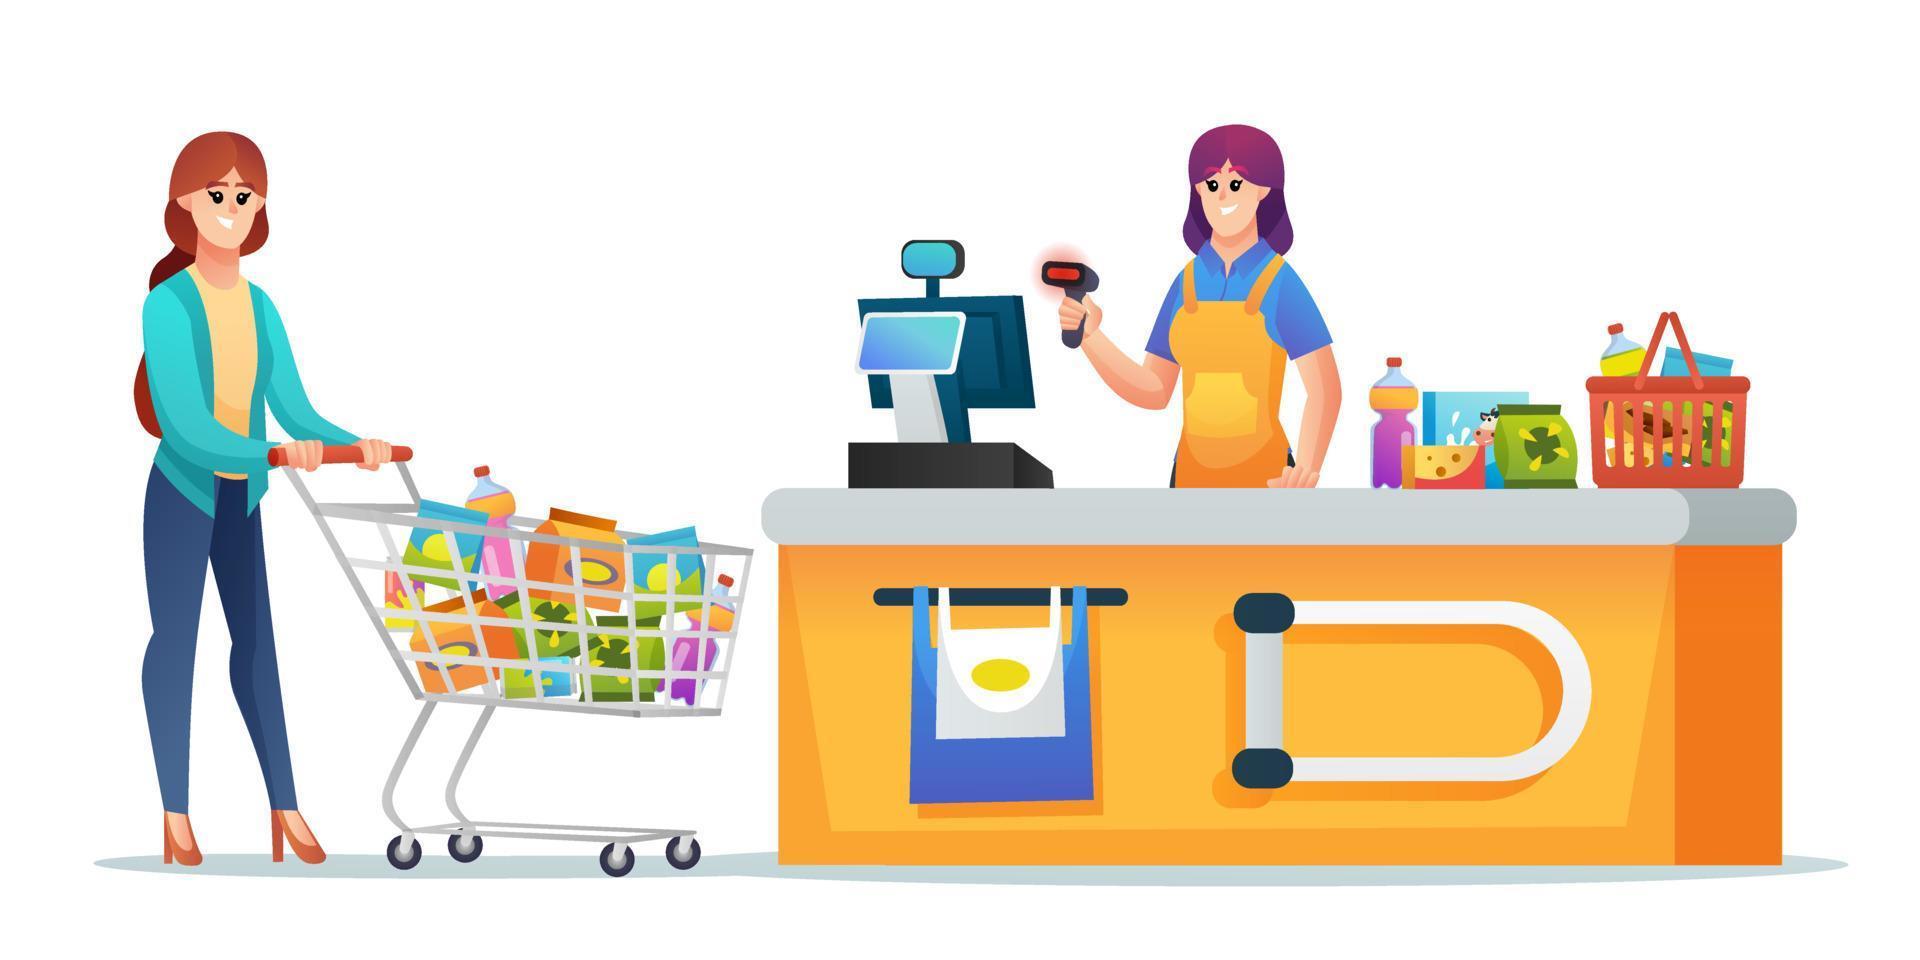 kassier en klant met boodschappentrolley en mand bij de kassa van de supermarkt illustratie vector